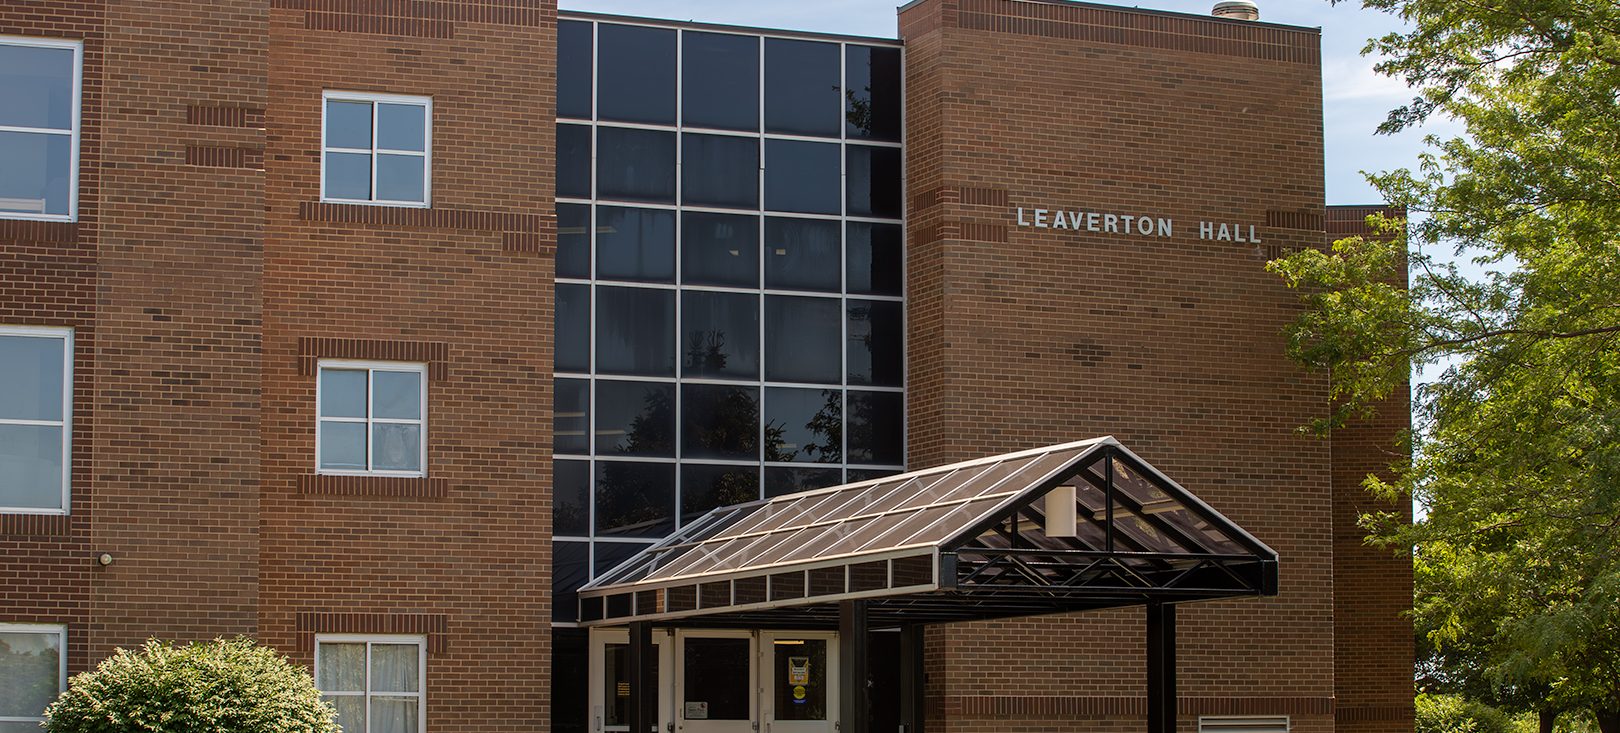 Leaverton Hall